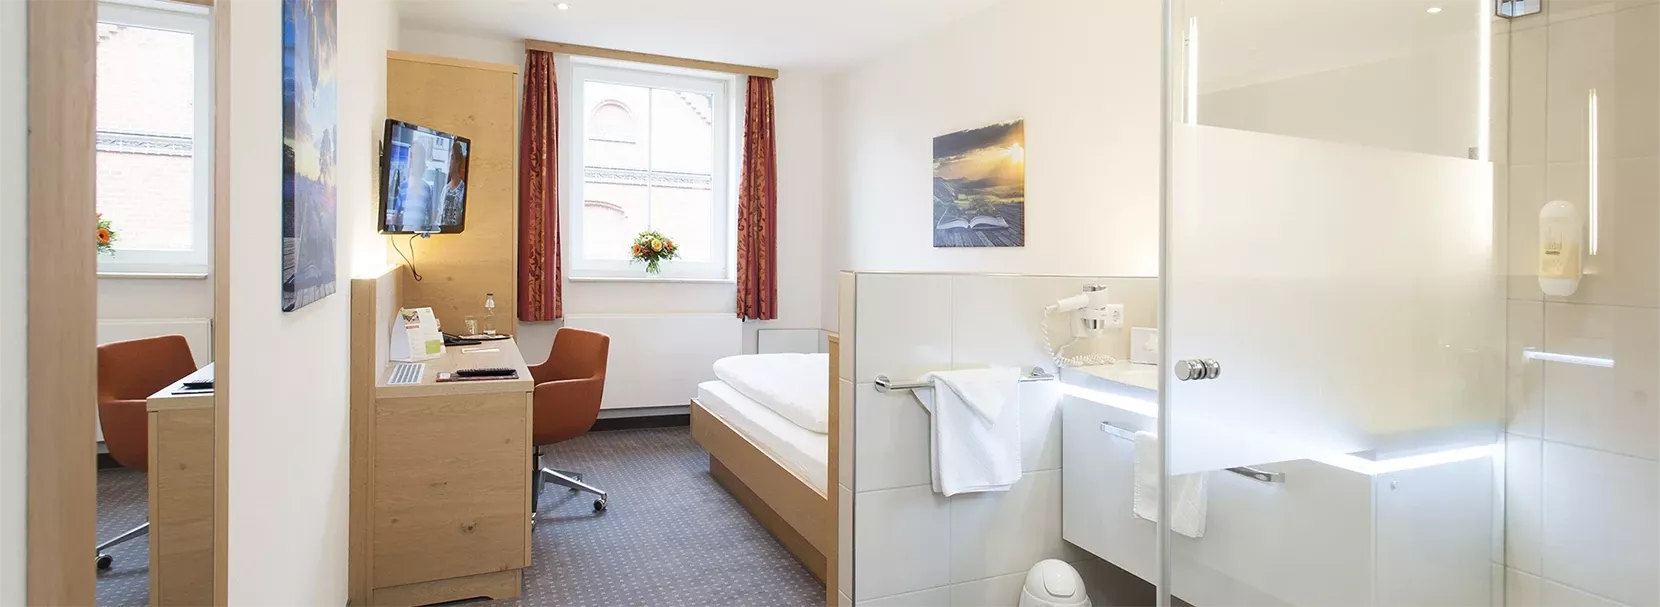 Comfort hotel room at Landhotel Behre in Ahlten